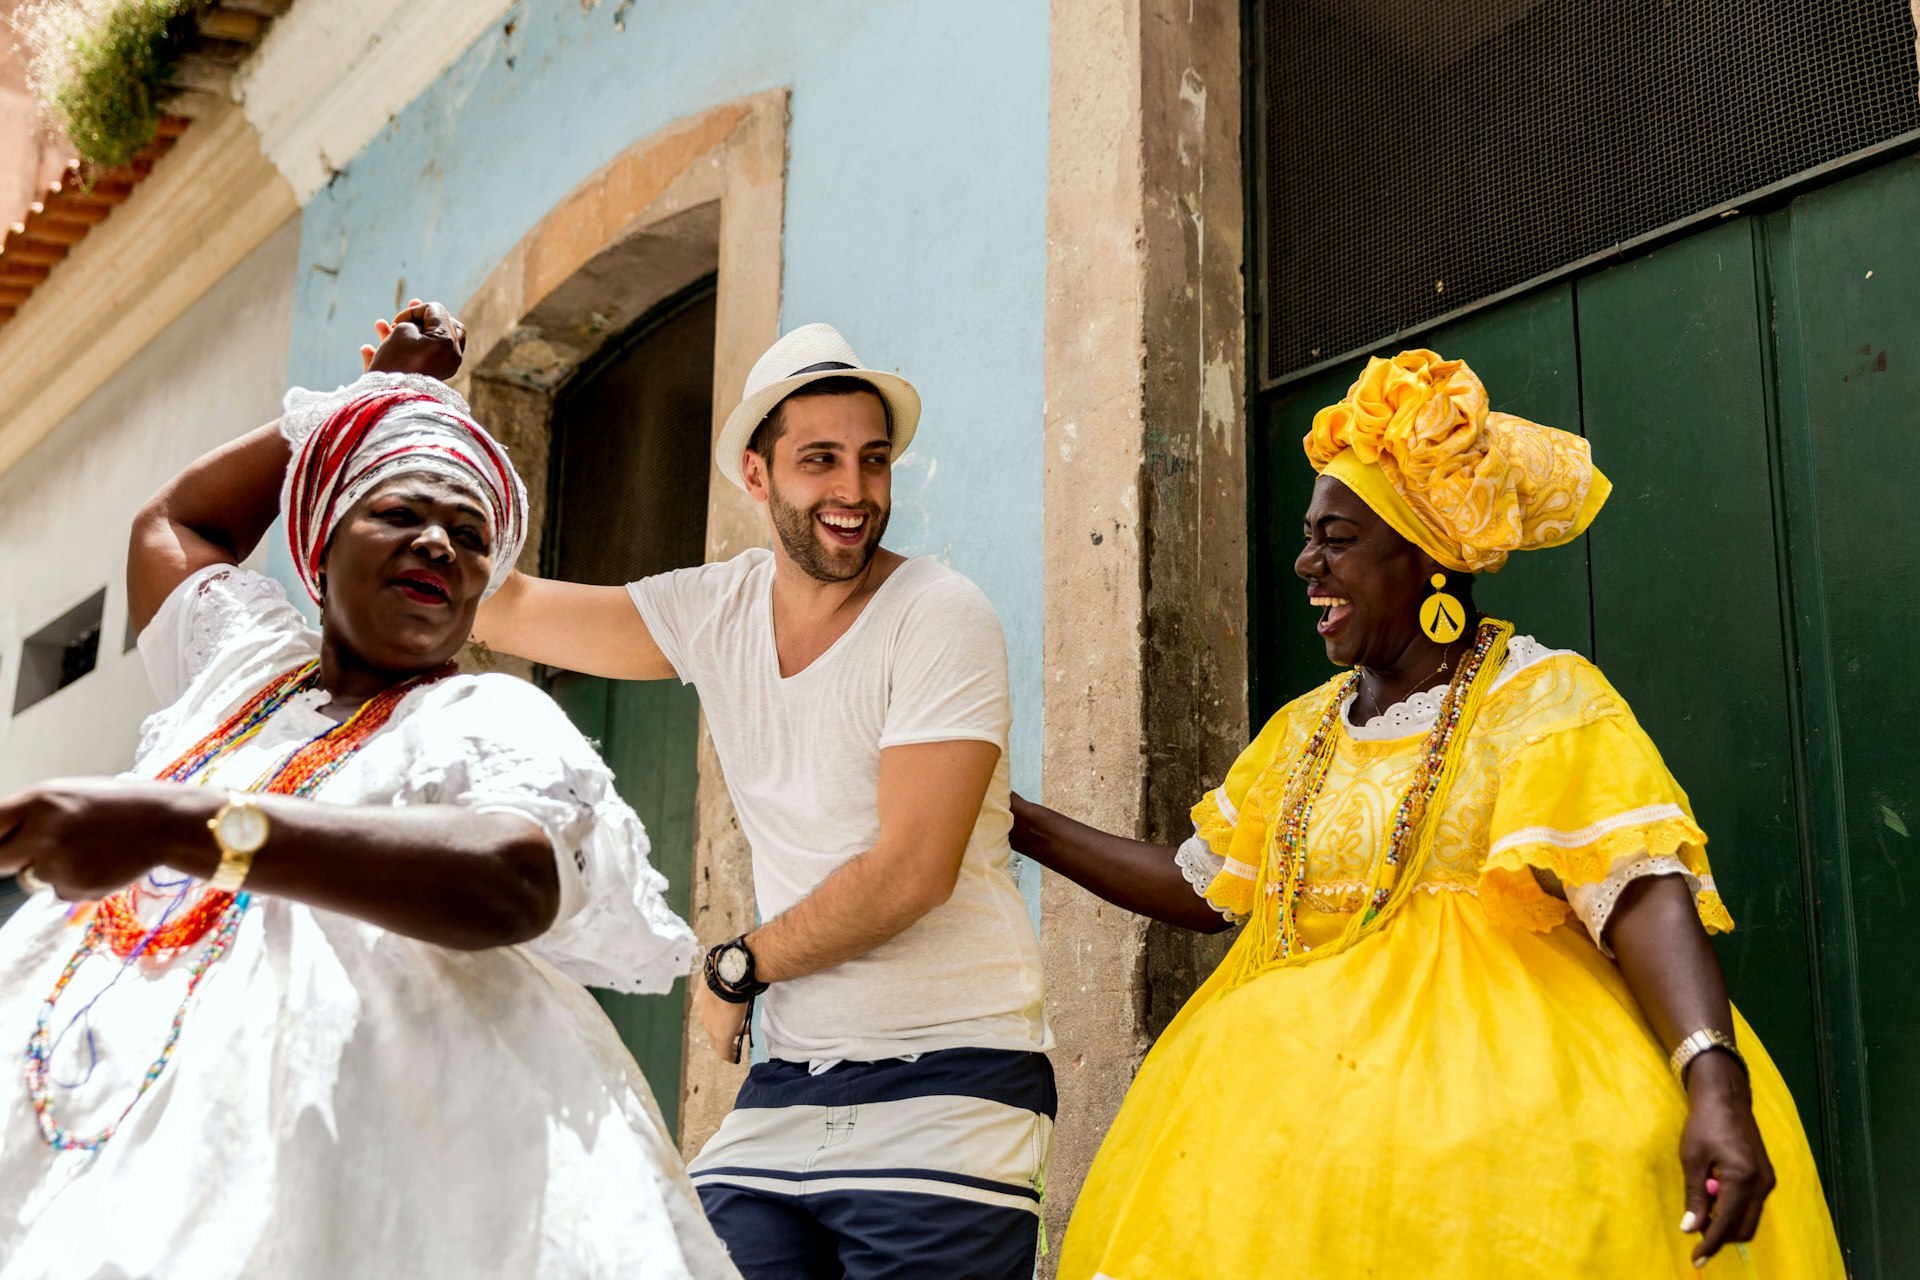 A traveler and locals dance on the streets of Pelourinho, Salvador, Bahia, Brazil